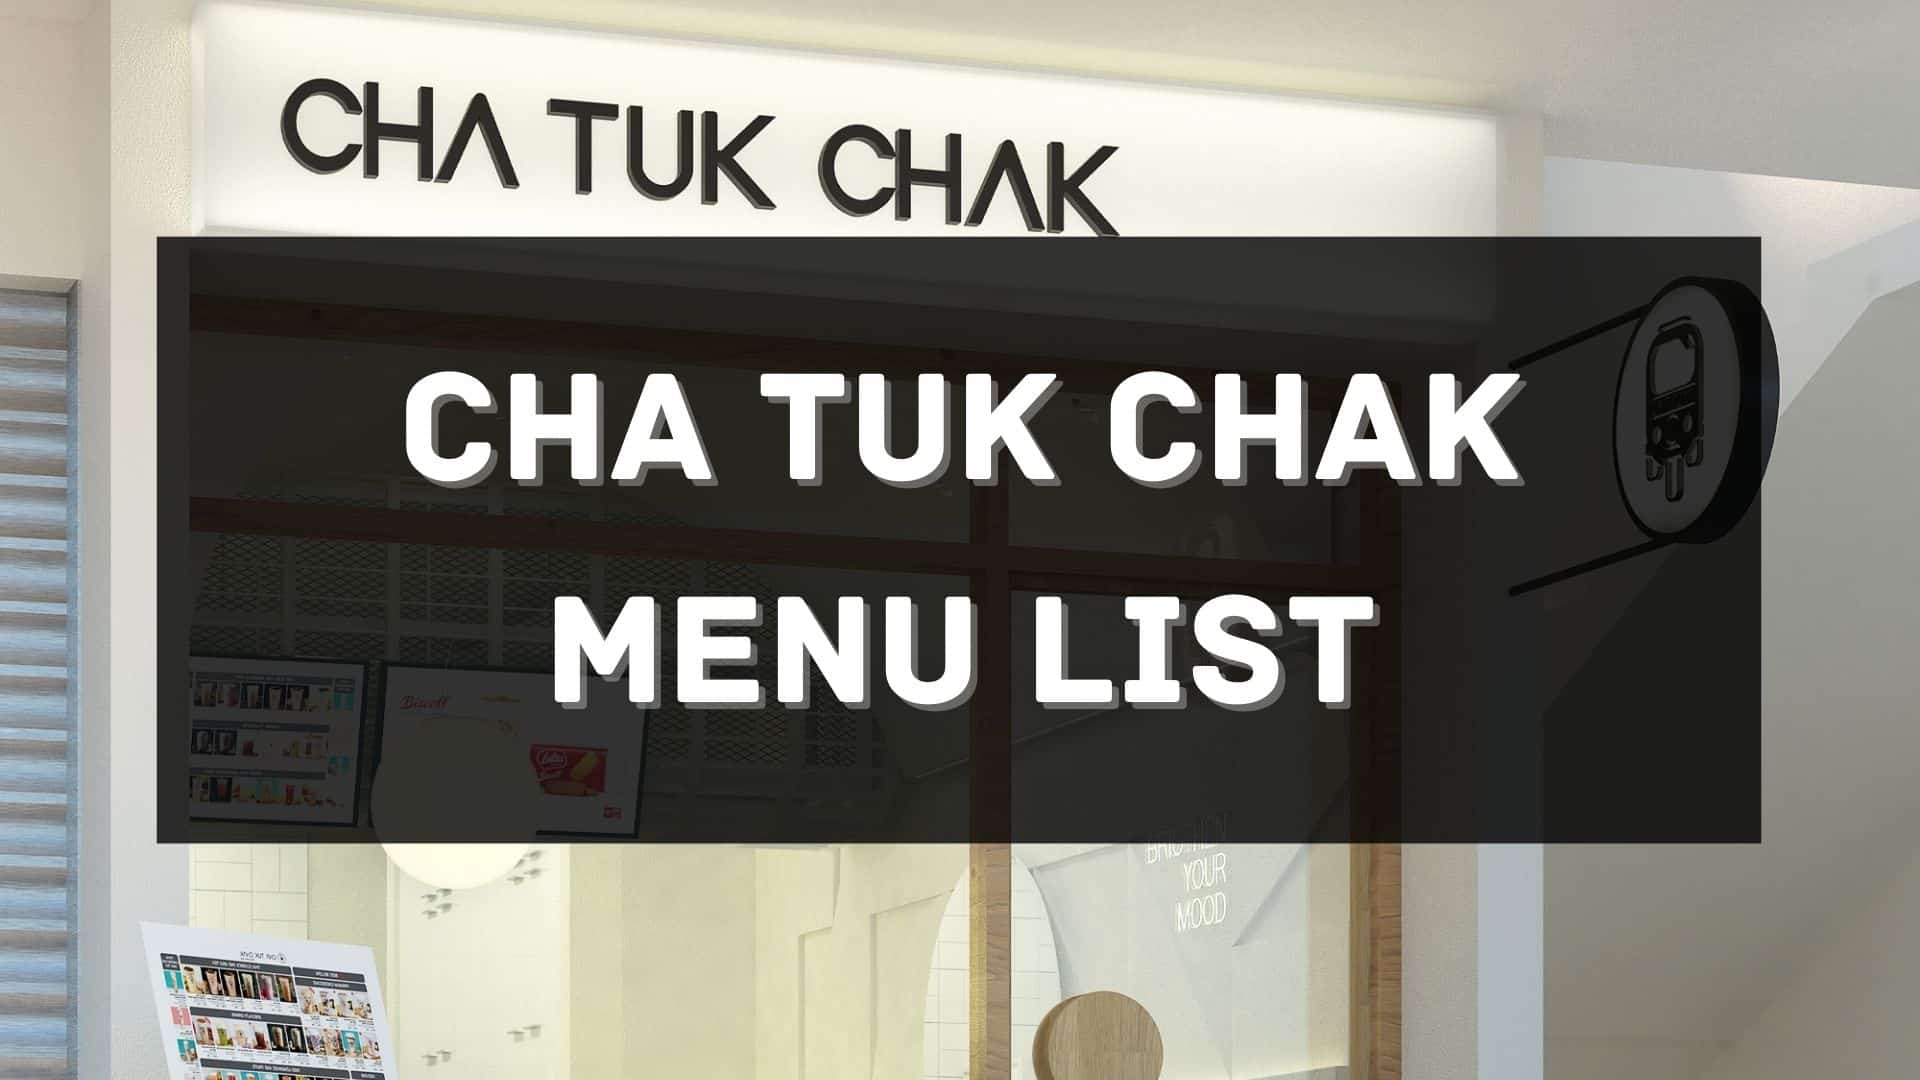 cha tuk chak menu prices philippines